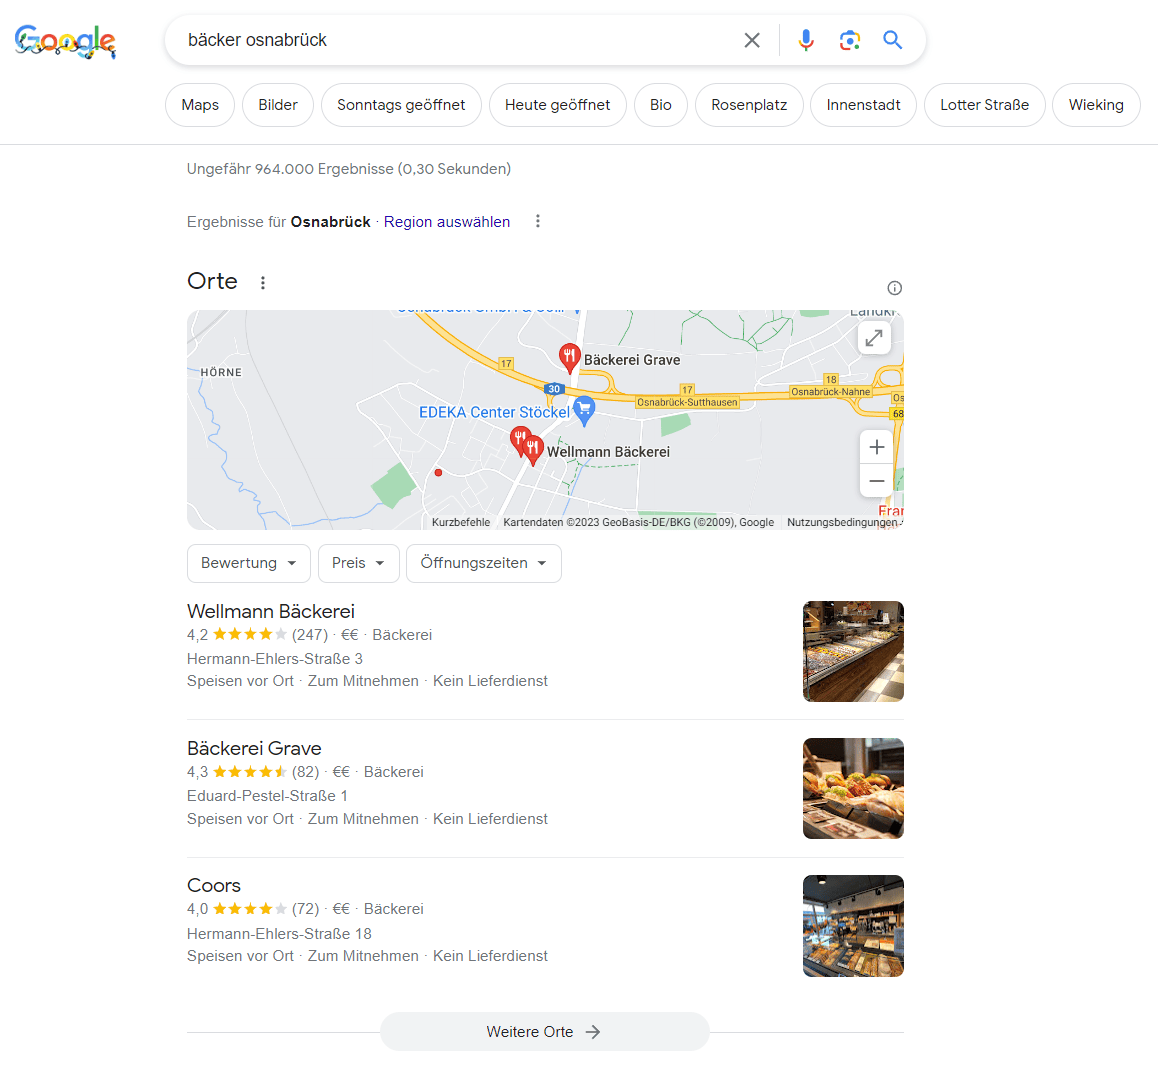 Google Suchergebnisse nach einer lokalen Suchanfrage zum Thema Bäcker Osnabrück